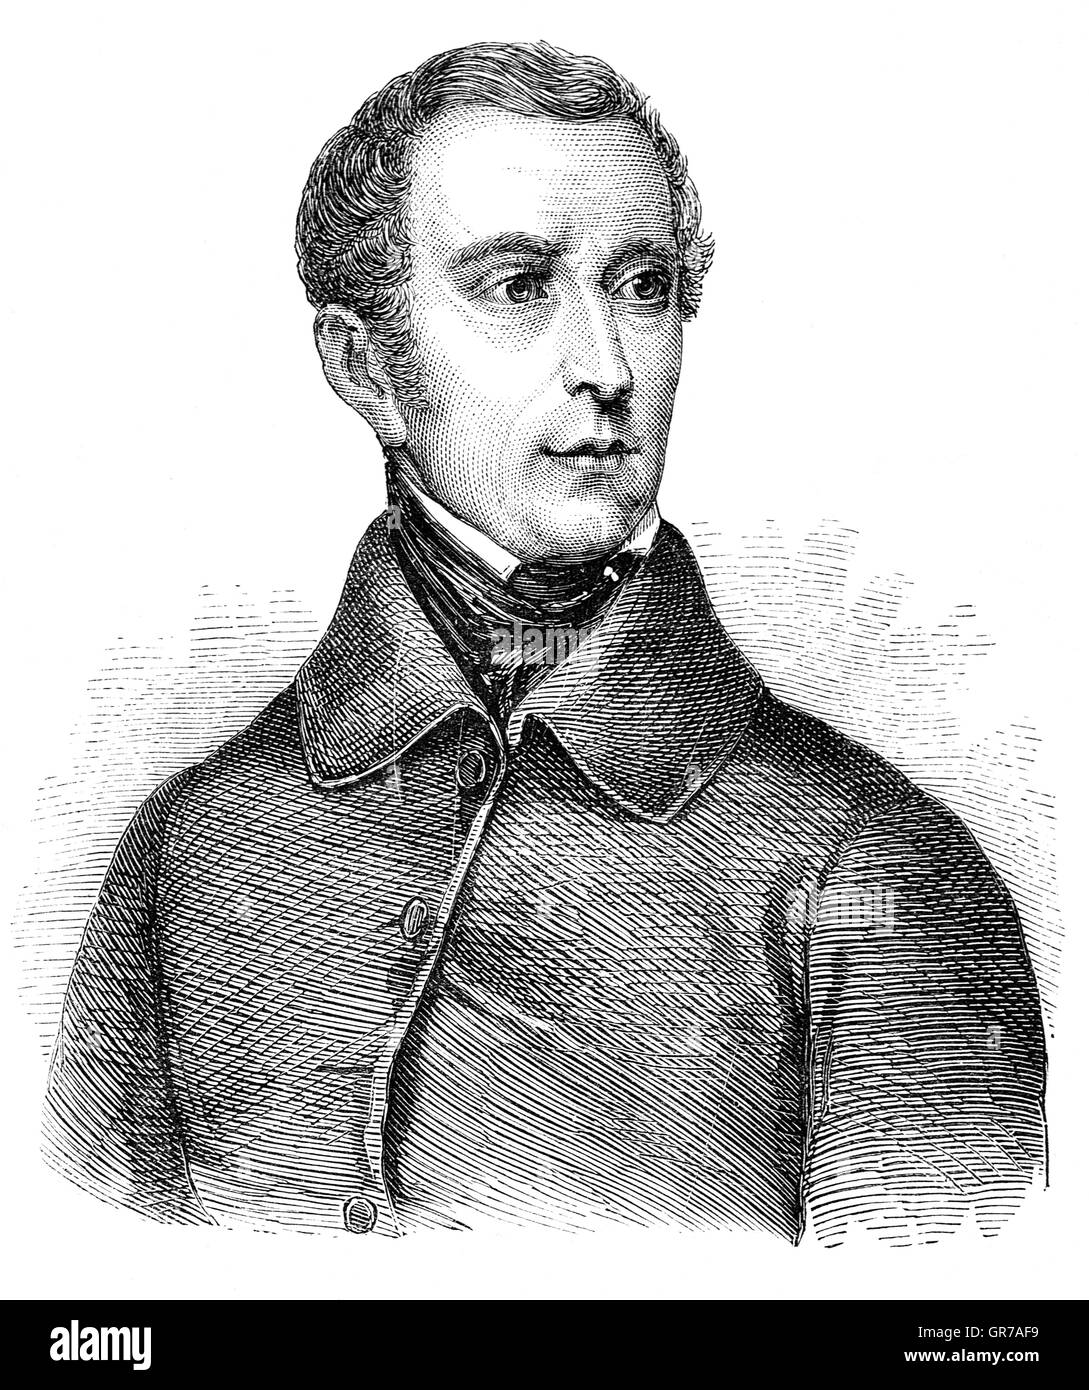 Alphonse Marie Louis de Prat de Lamartine, Chevalier de Pratz (1790 - 1869), était un écrivain français, poète et homme politique qui a joué un rôle déterminant dans la fondation de la Deuxième République et la poursuite de la tricolore comme le drapeau de la France. Banque D'Images